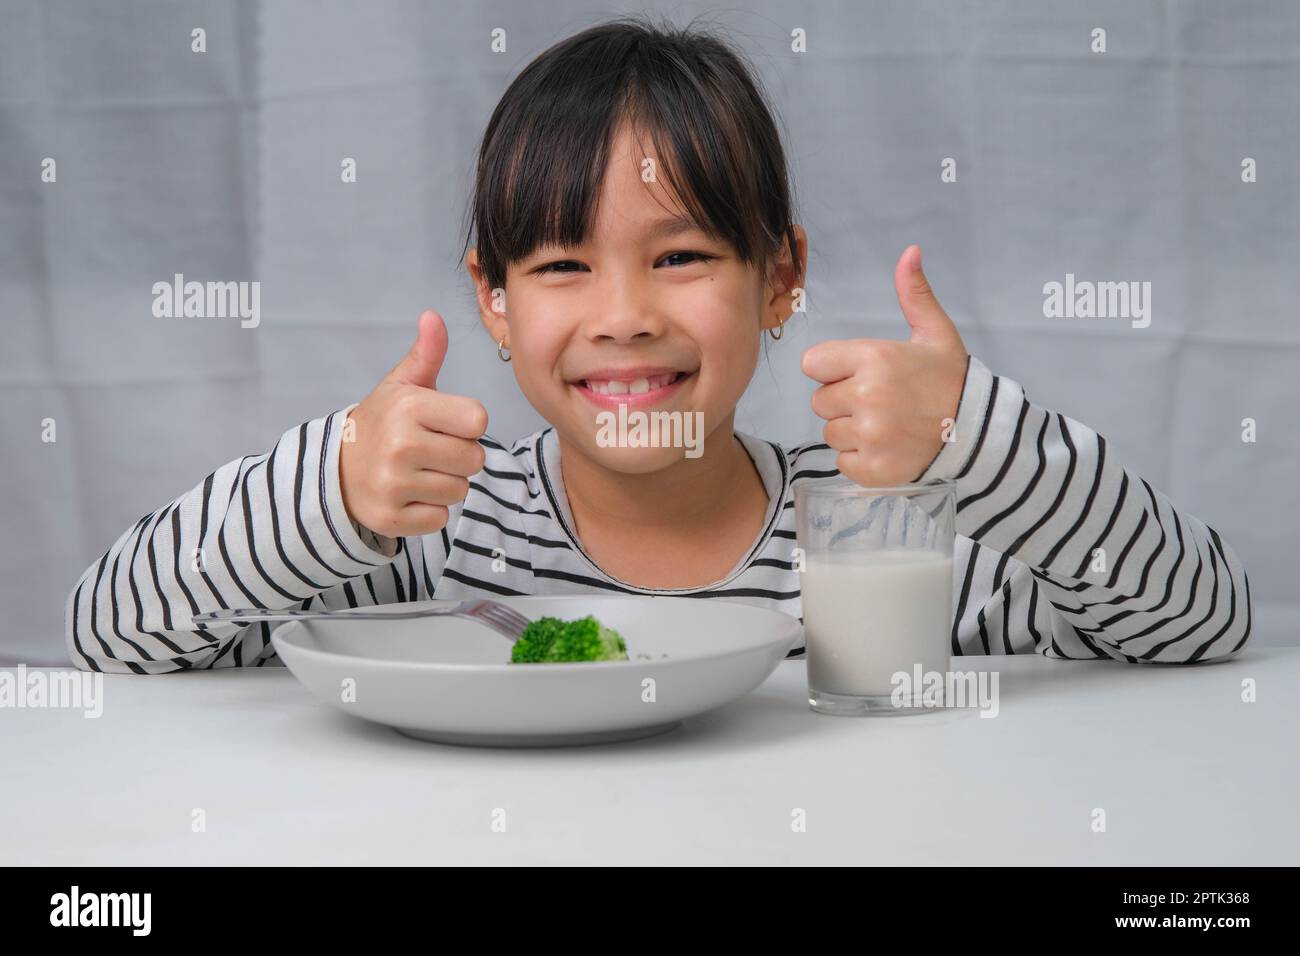 Jolie fille asiatique buvant un verre de lait le matin avant d'aller à l'école. La petite fille mange des légumes sains et du lait pour ses repas. Santé FO Banque D'Images